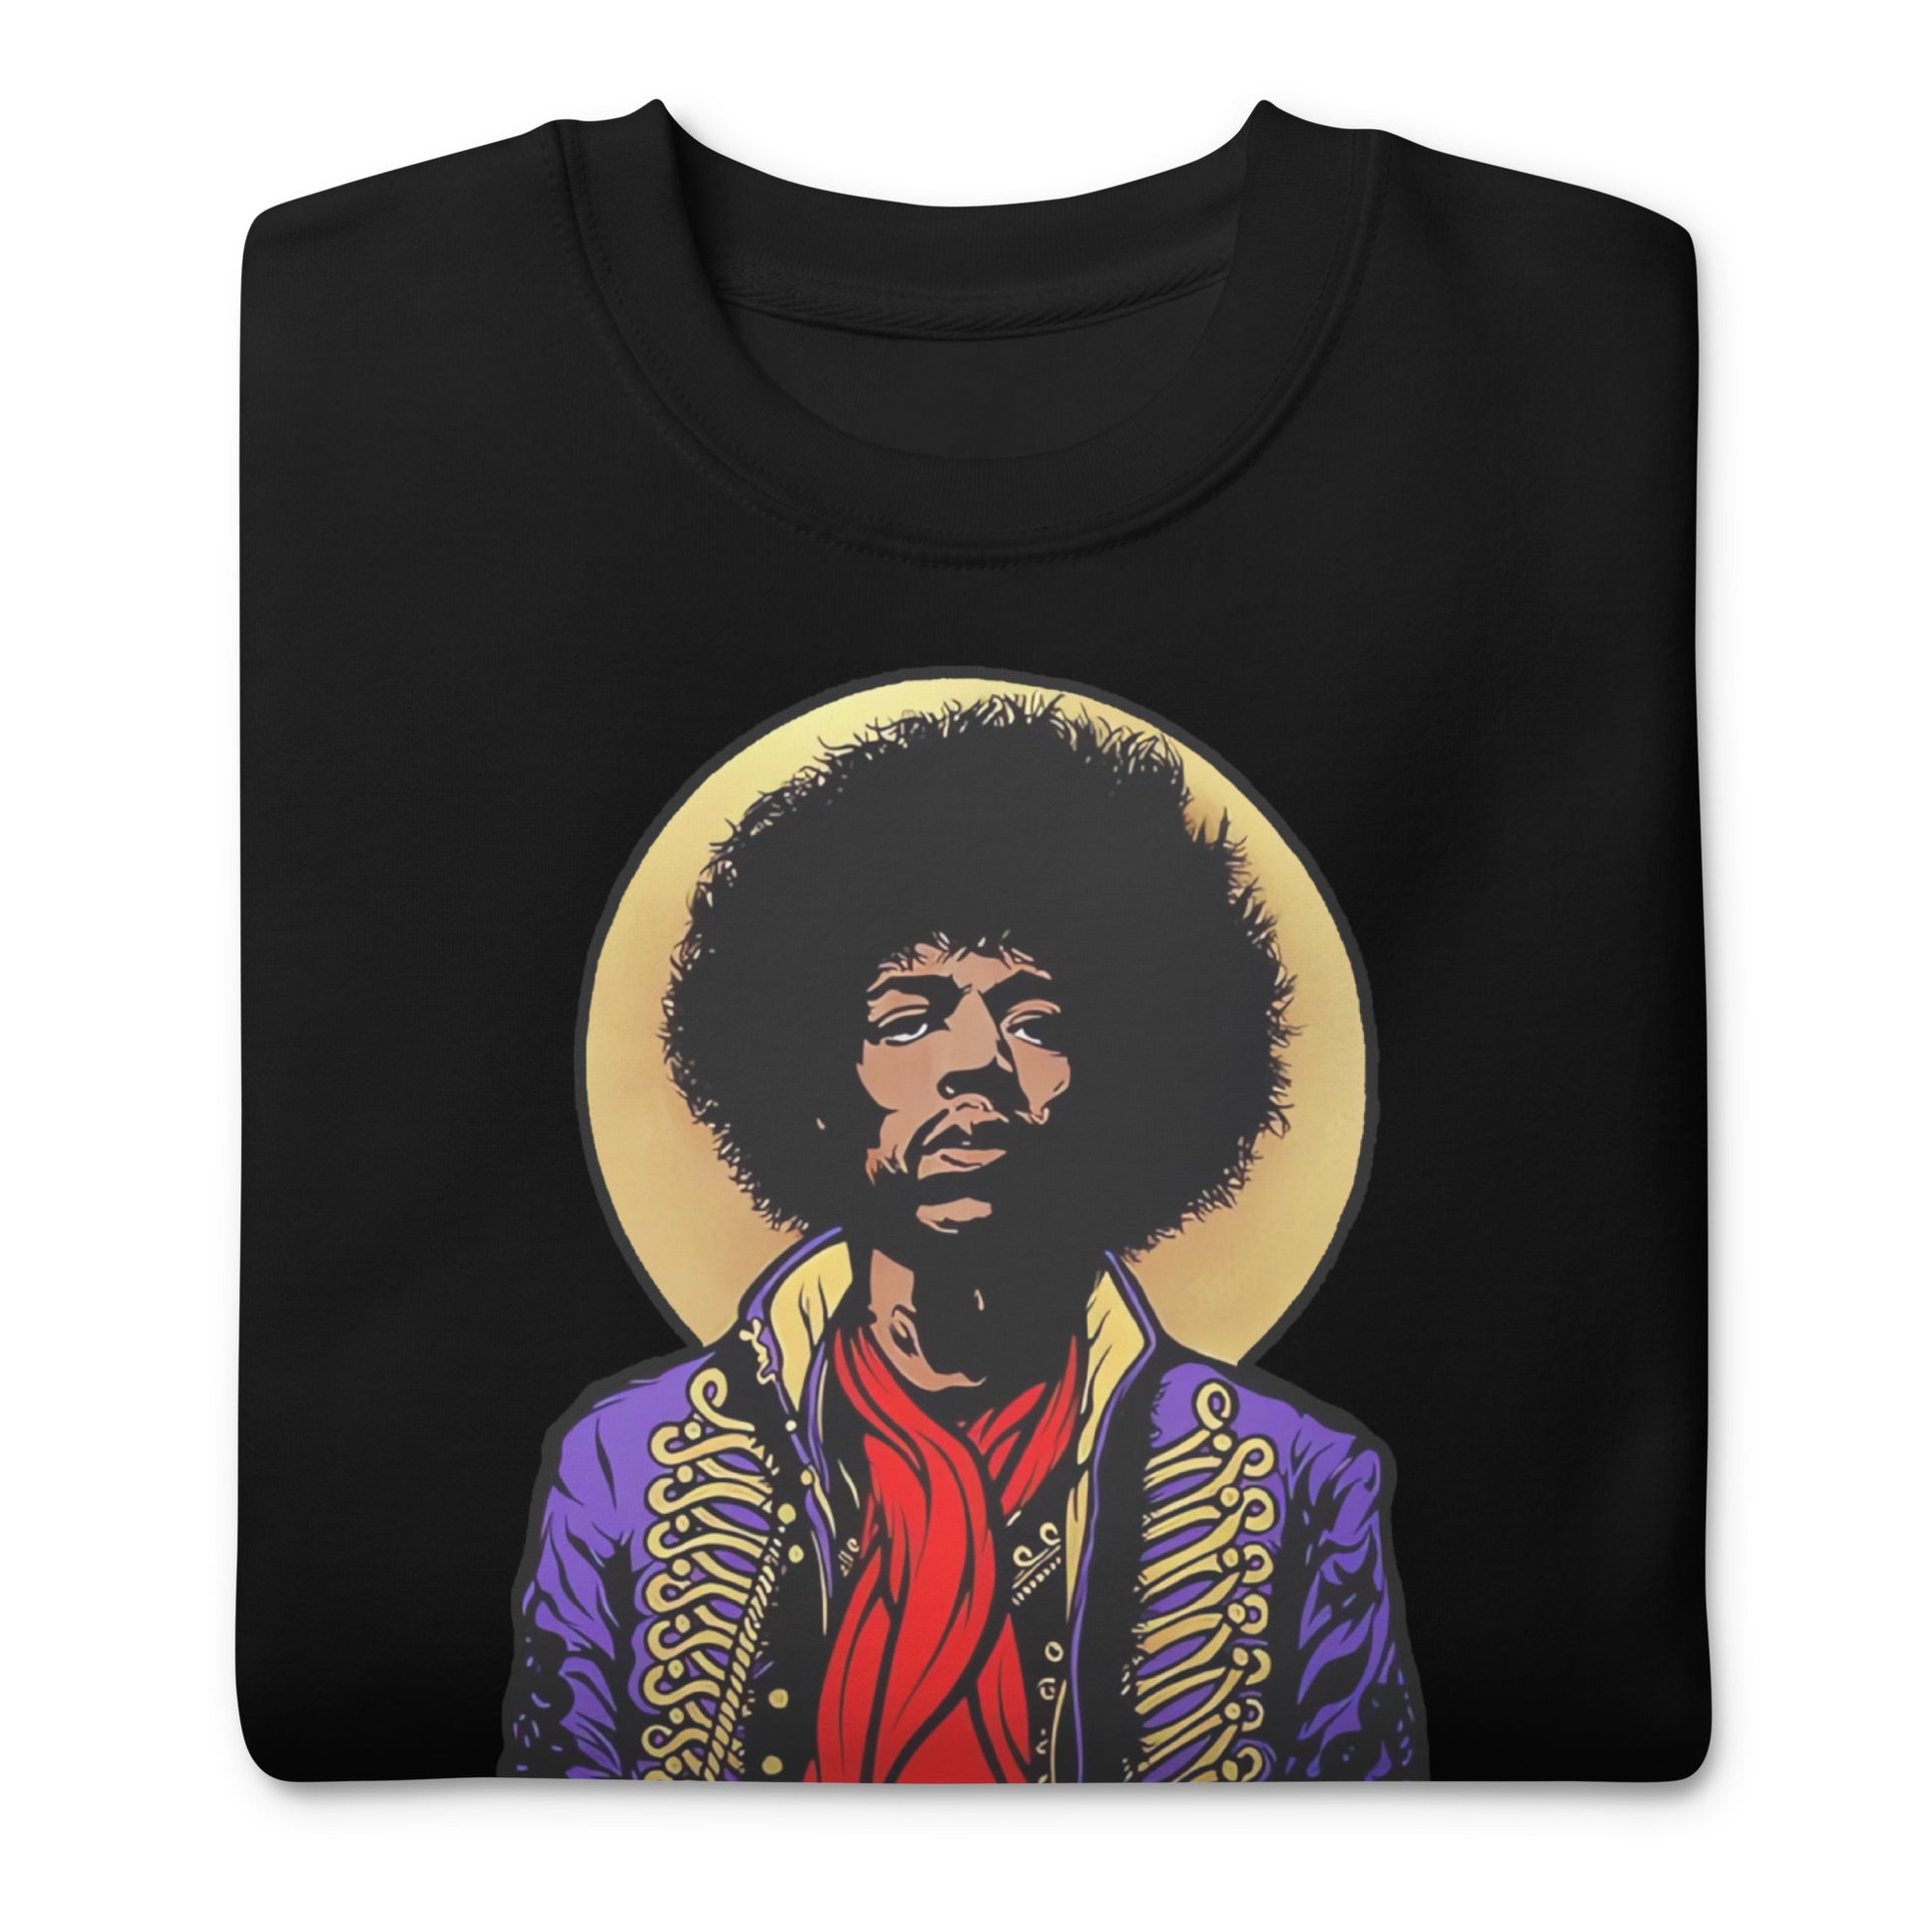 Suéter Jimi Hendrix purple haze, Disponible en la mejor tienda online para comprar tu merch favorita, la mejor Calidad, compra Ahora!